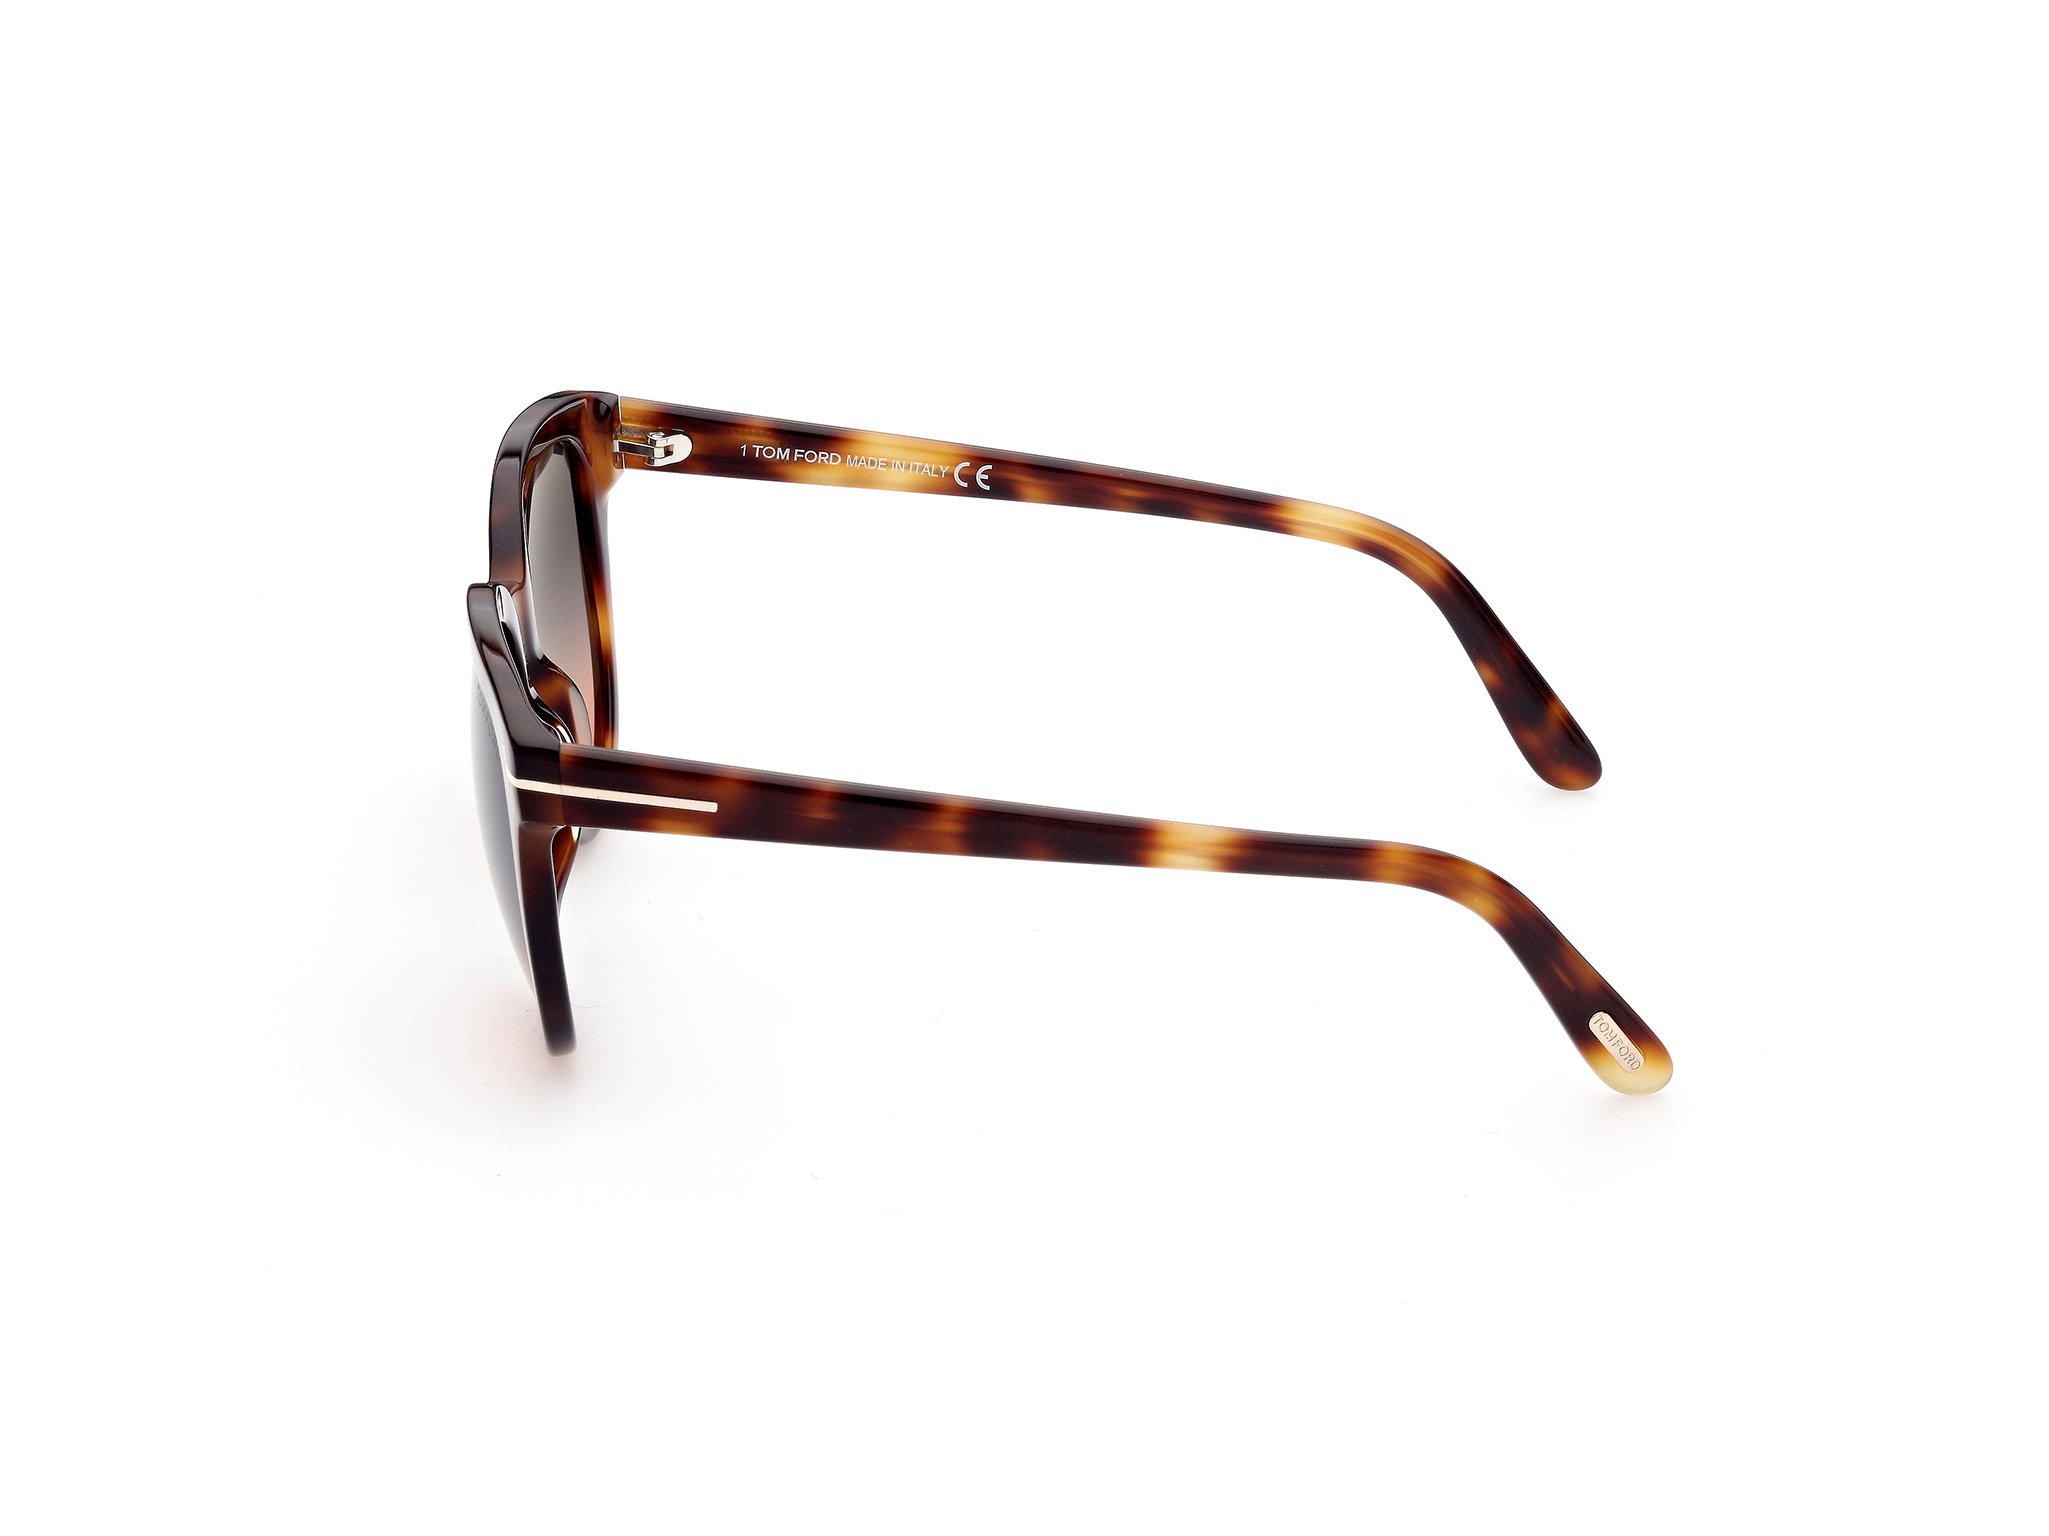 Das Bild zeigt die Sonnenbrille Sabrina FT0914 von der Marke Tom Ford in braun gemustert seitlich